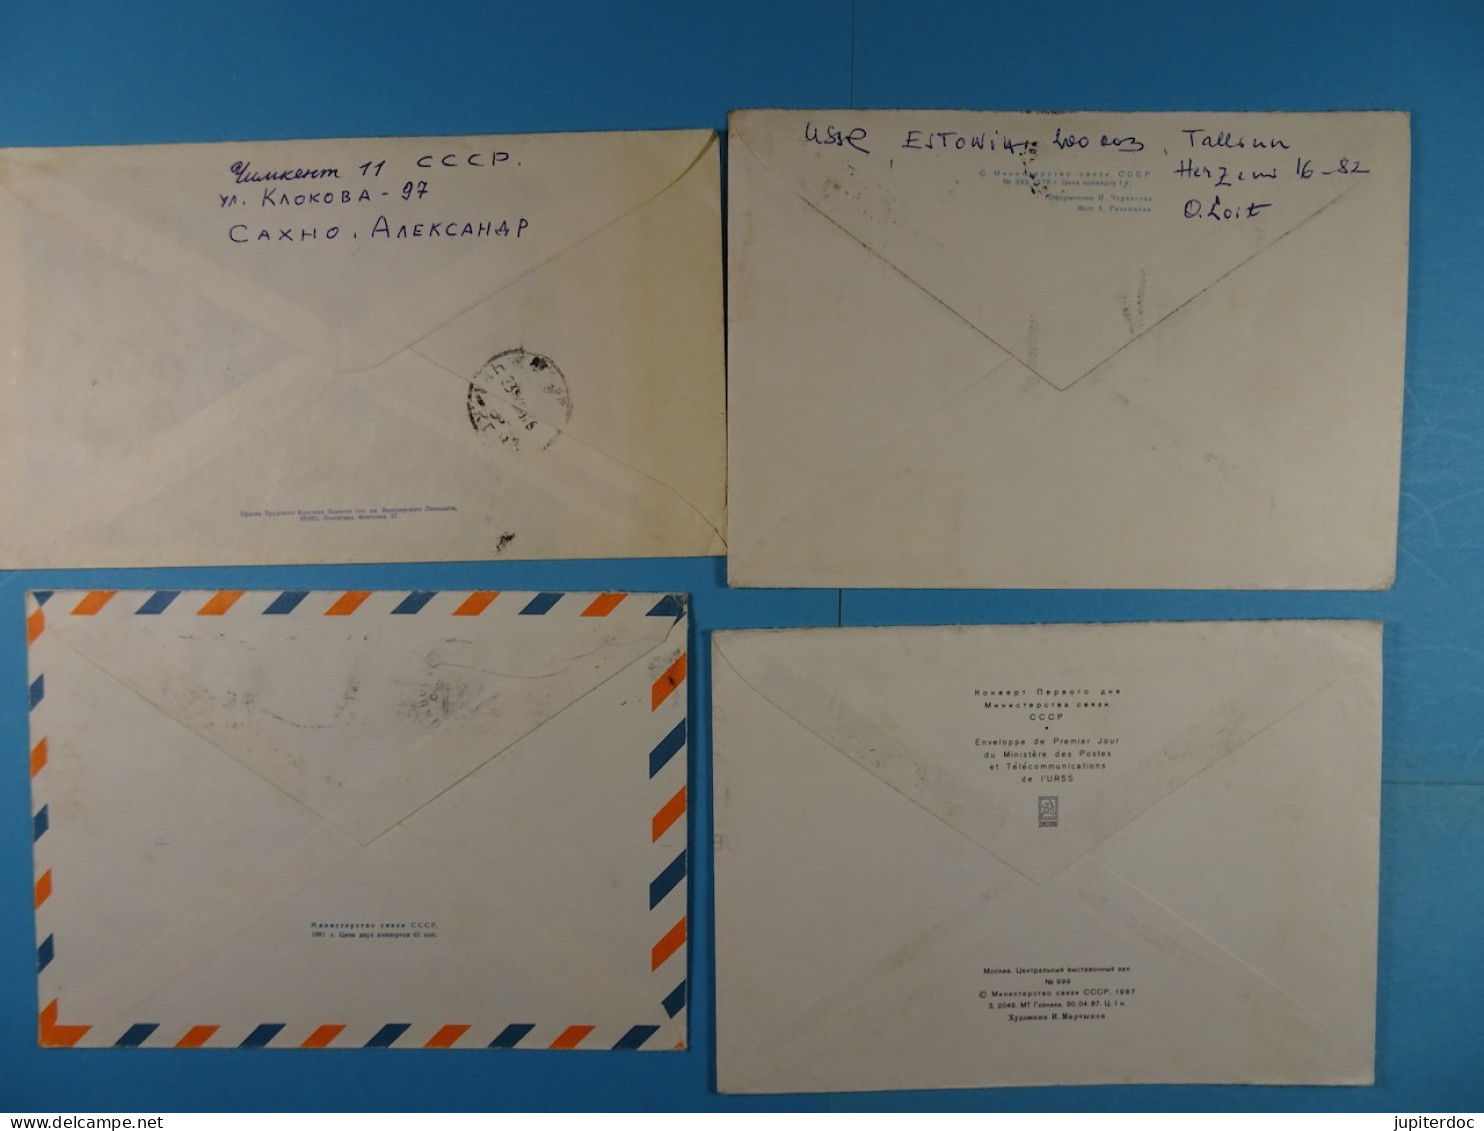 Lot de 135 courriers Premier jour Aérogramme Par Avion Recommandé... (Australie, Russie, Pologne, U.S.A.,...)(65 photos)